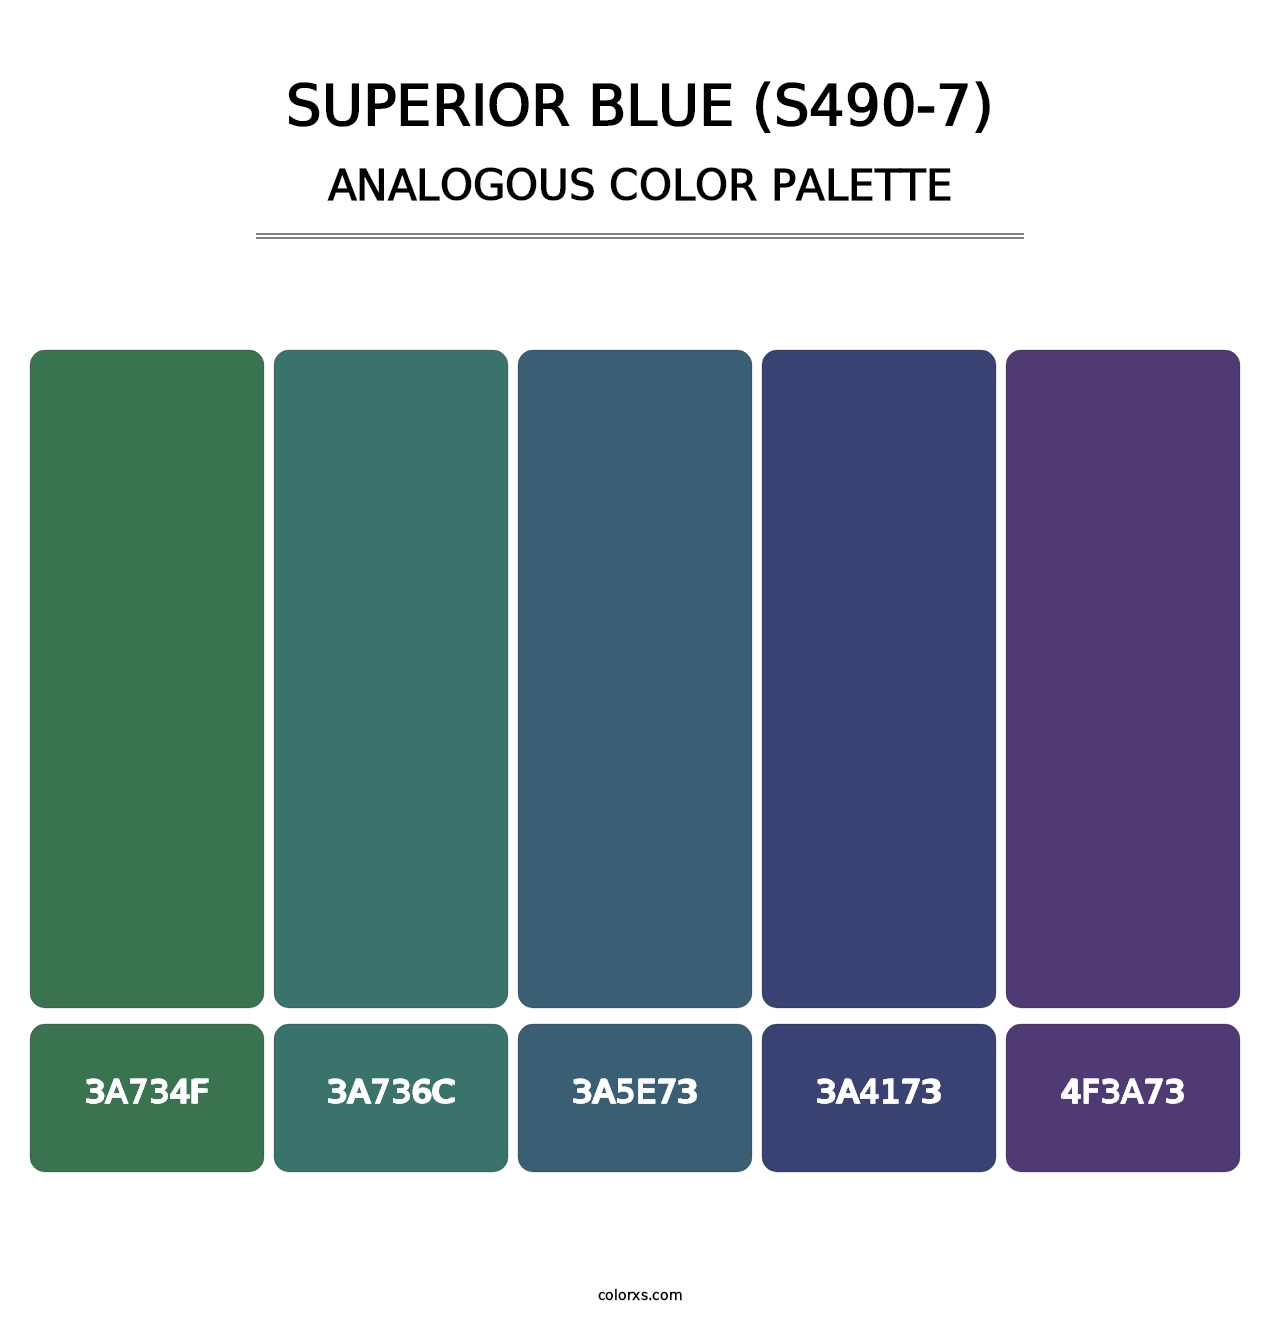 Superior Blue (S490-7) - Analogous Color Palette